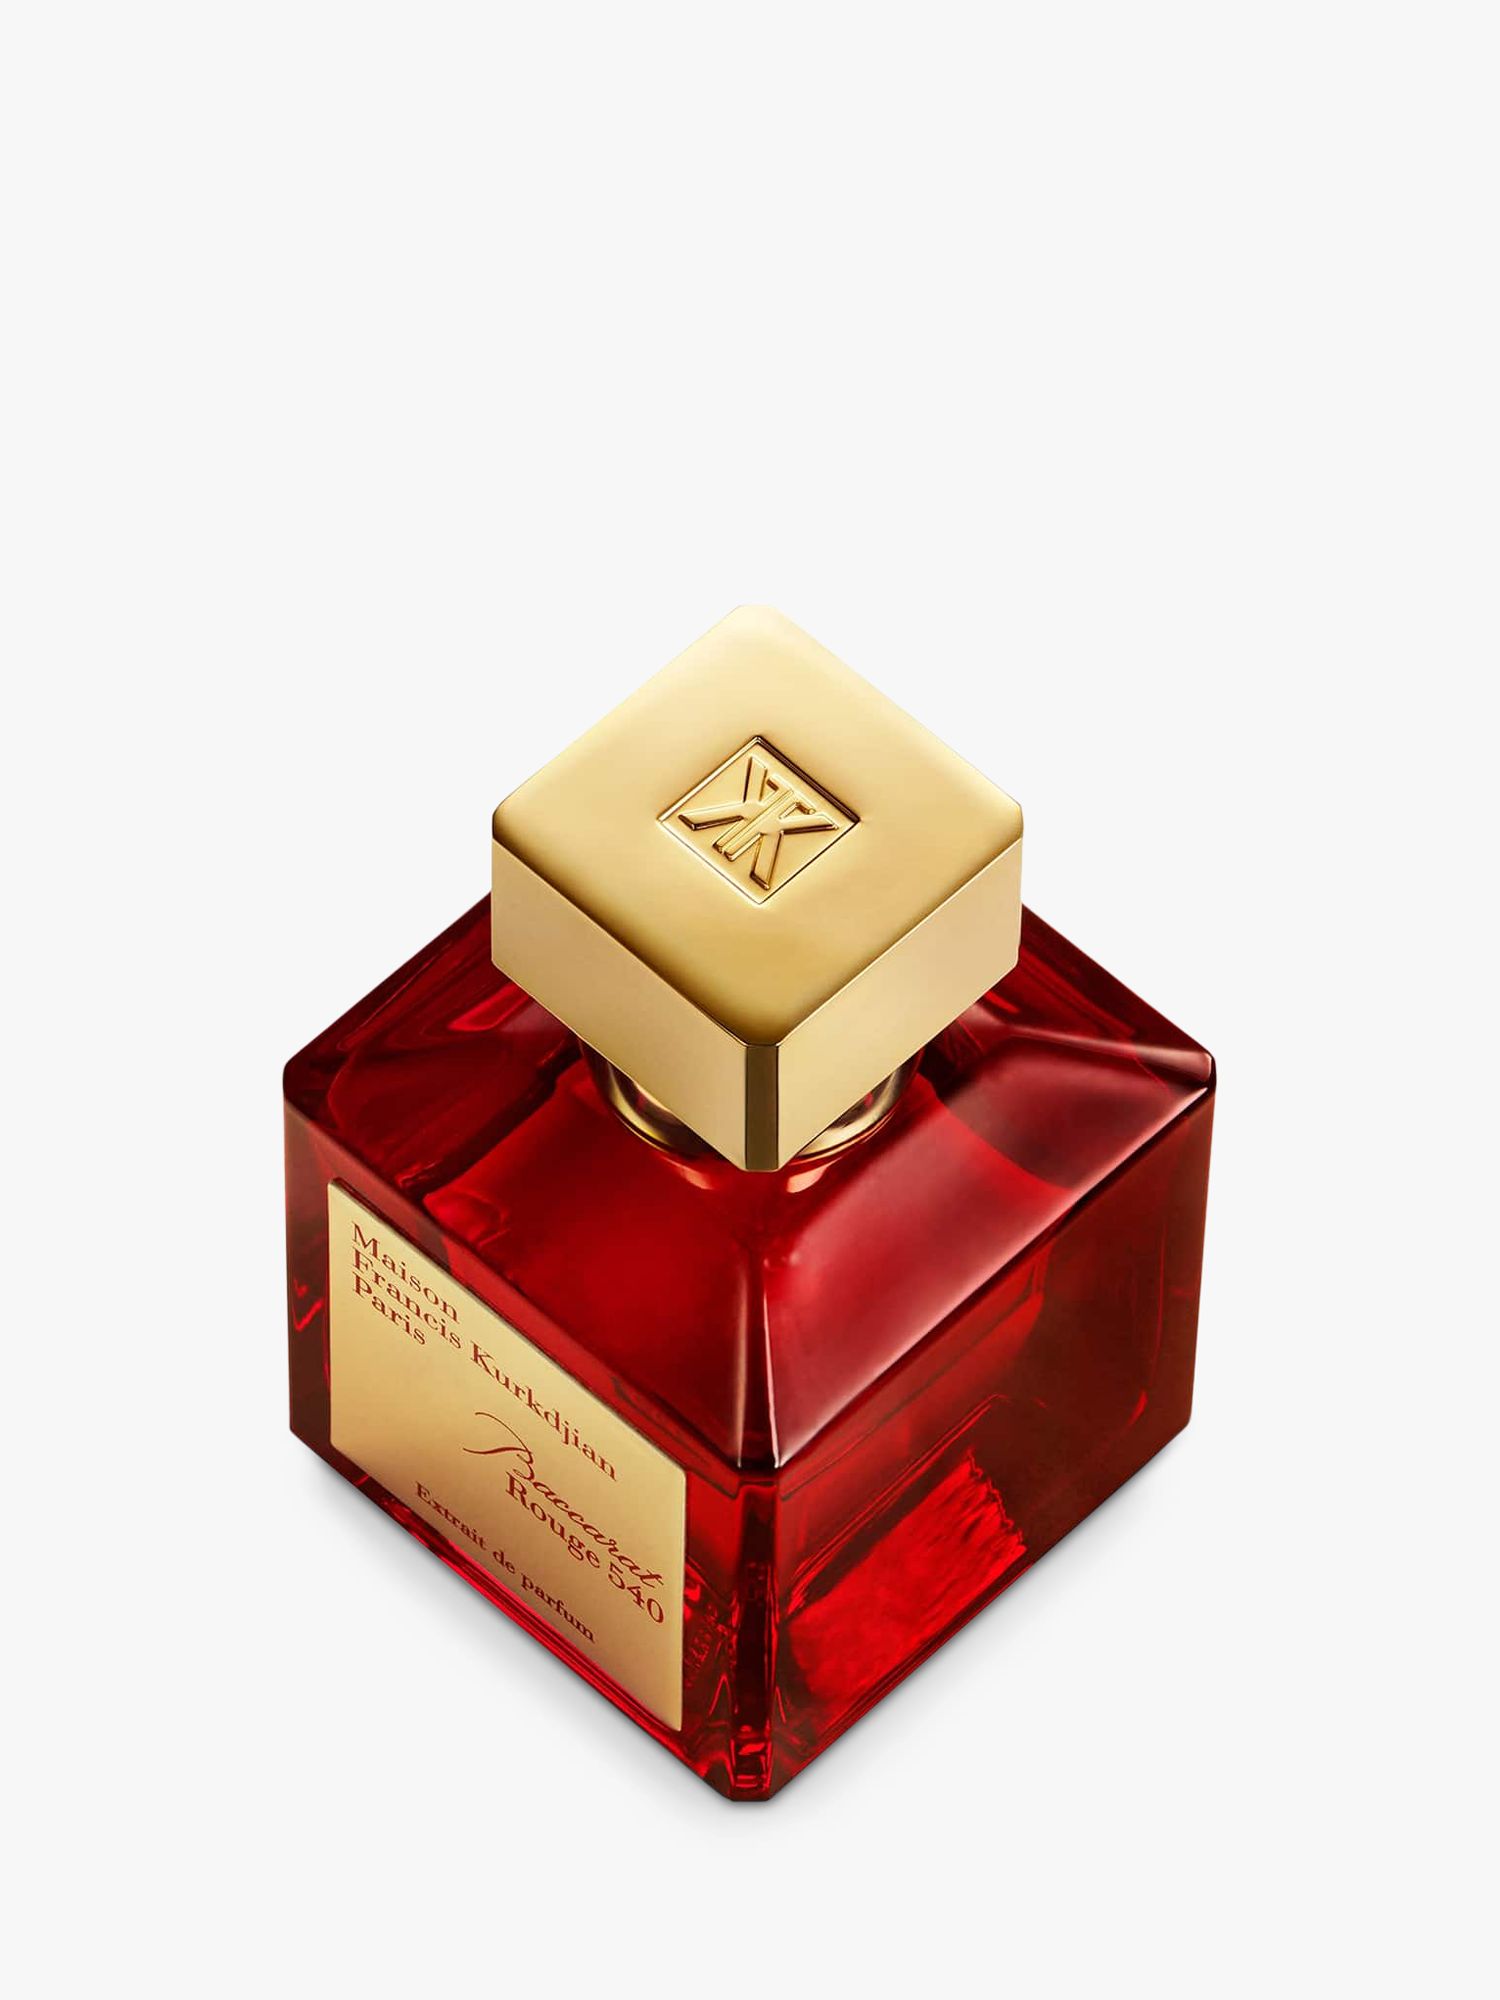 Maison Francis Kurkdjian Baccarat Rouge 540 Extrait de Parfum, 70ml